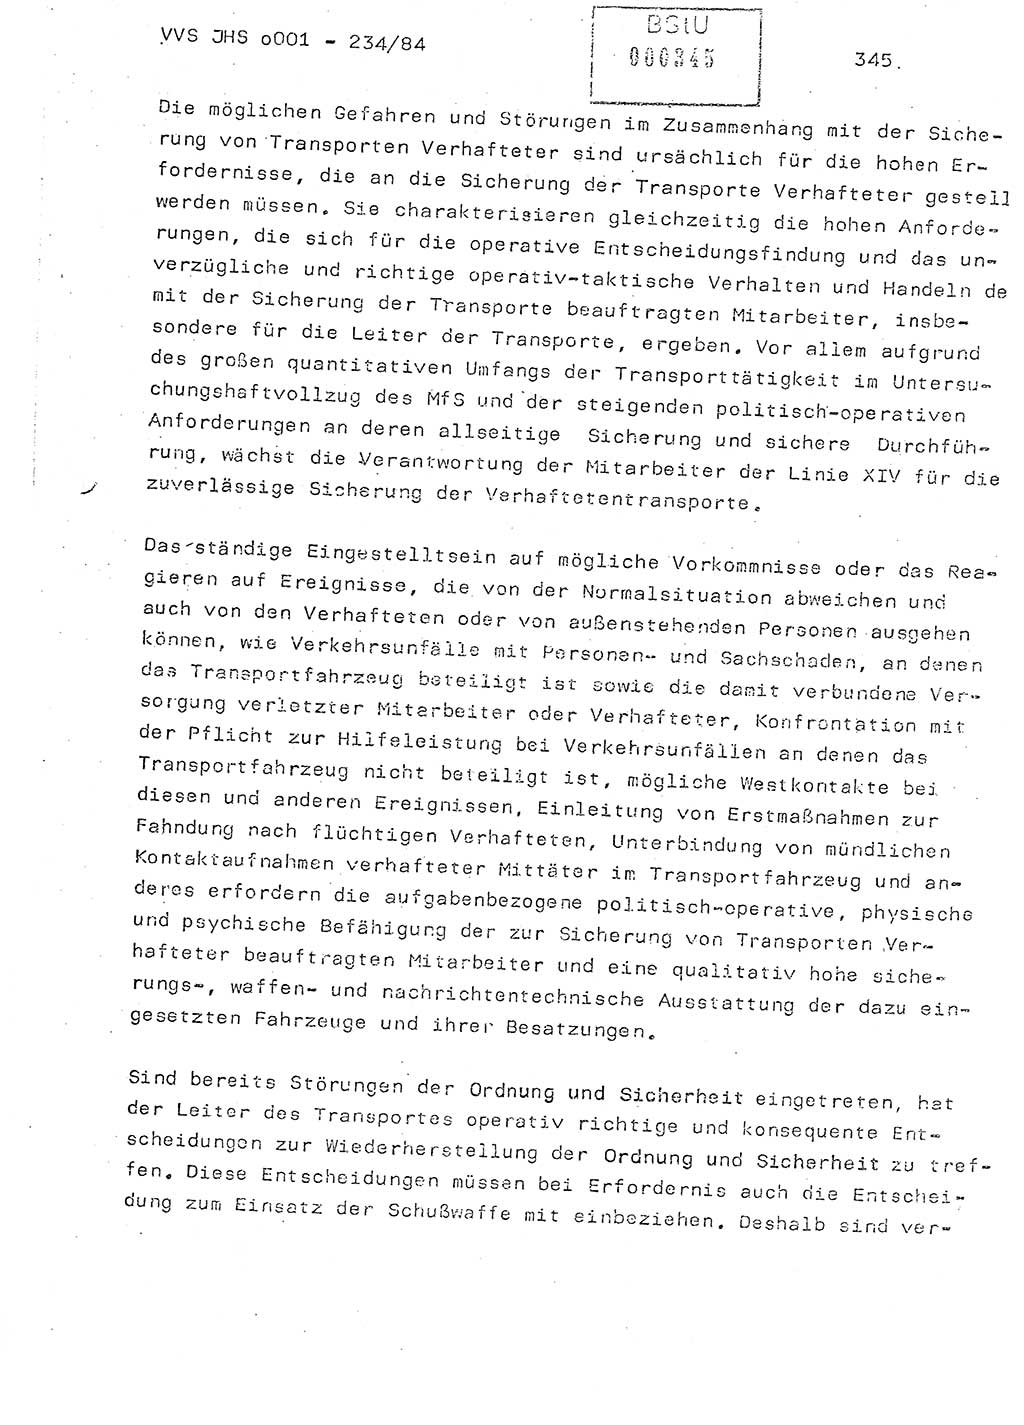 Dissertation Oberst Siegfried Rataizick (Abt. ⅩⅣ), Oberstleutnant Volkmar Heinz (Abt. ⅩⅣ), Oberstleutnant Werner Stein (HA Ⅸ), Hauptmann Heinz Conrad (JHS), Ministerium für Staatssicherheit (MfS) [Deutsche Demokratische Republik (DDR)], Juristische Hochschule (JHS), Vertrauliche Verschlußsache (VVS) o001-234/84, Potsdam 1984, Seite 345 (Diss. MfS DDR JHS VVS o001-234/84 1984, S. 345)